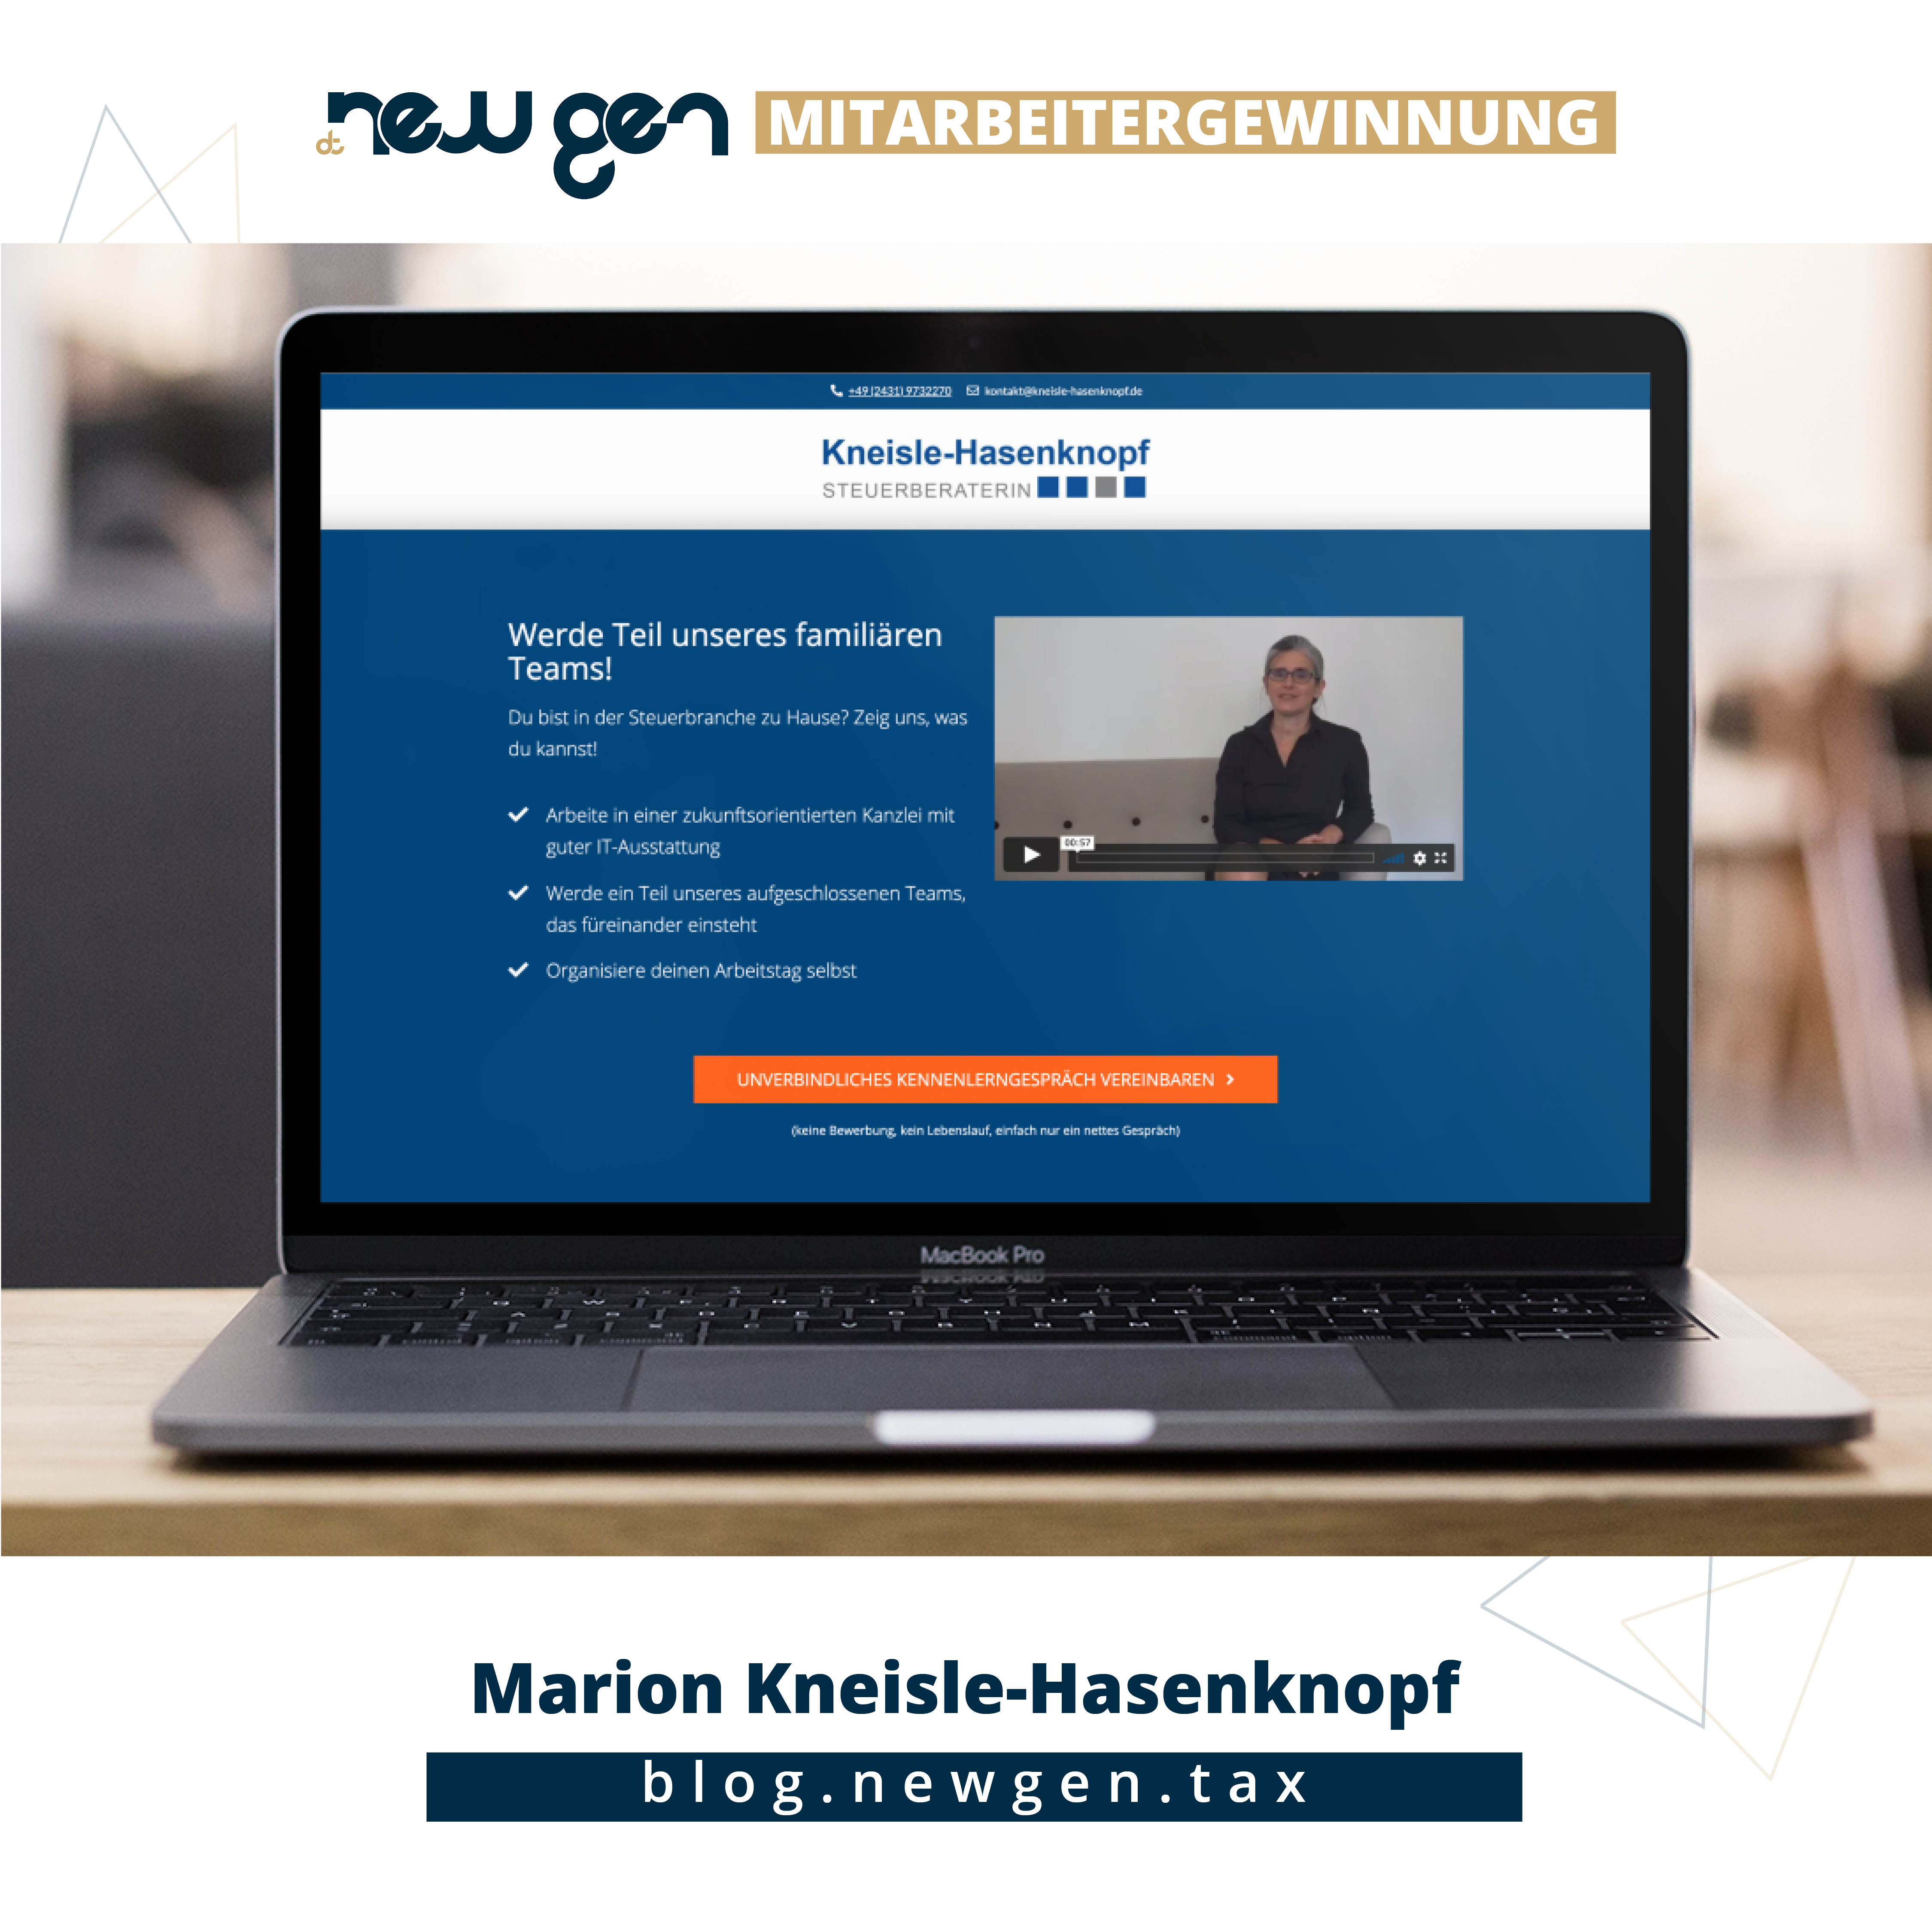 new gen Mitarbeitergewinnung - Marion Kneisle-Hasenknopf